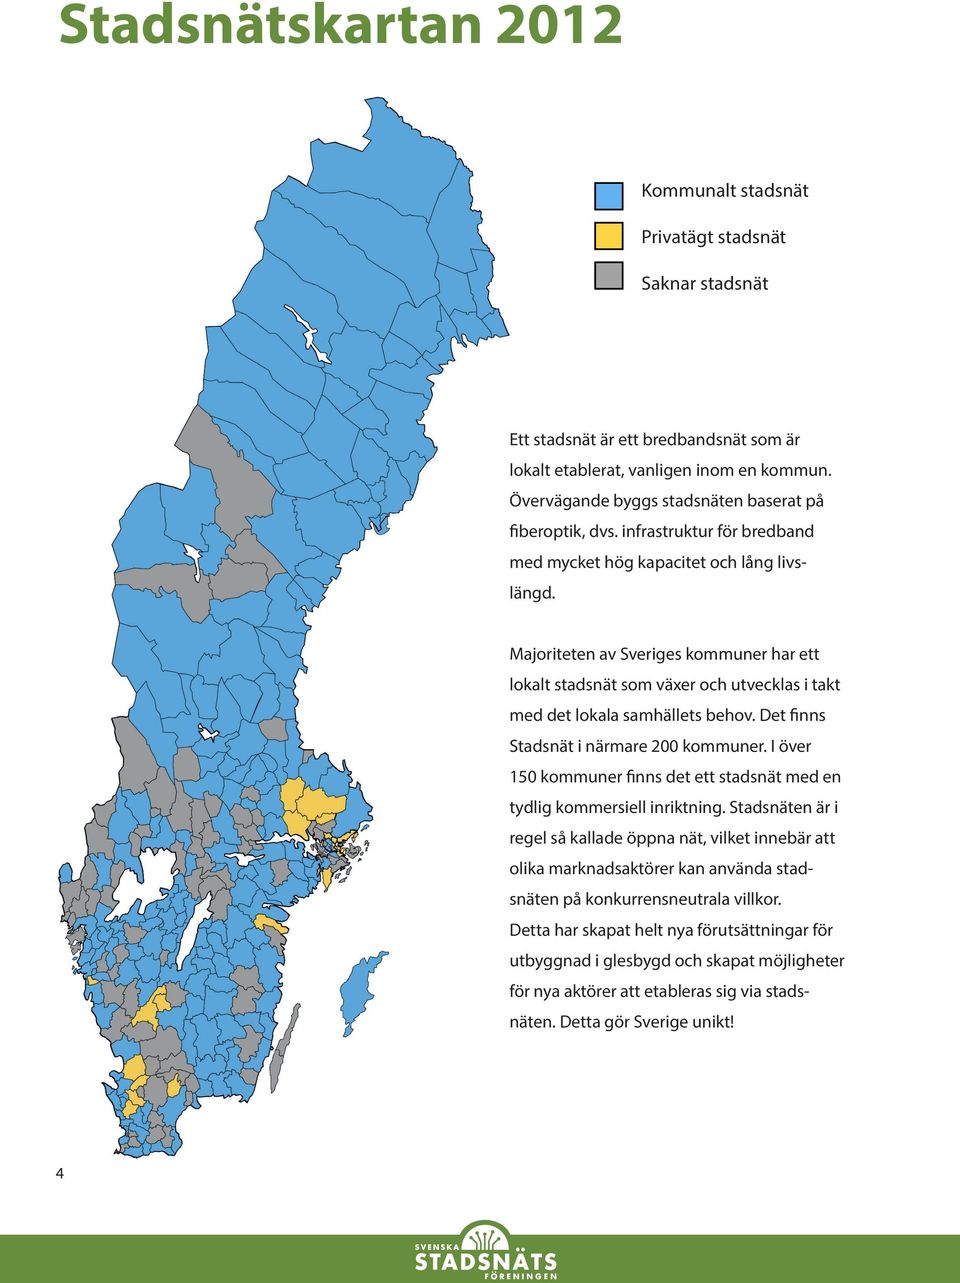 Majoriteten av Sveriges kommuner har ett lokalt stadsnät som växer och utvecklas i takt med det lokala samhällets behov. Det finns Stadsnät i närmare 200 kommuner.